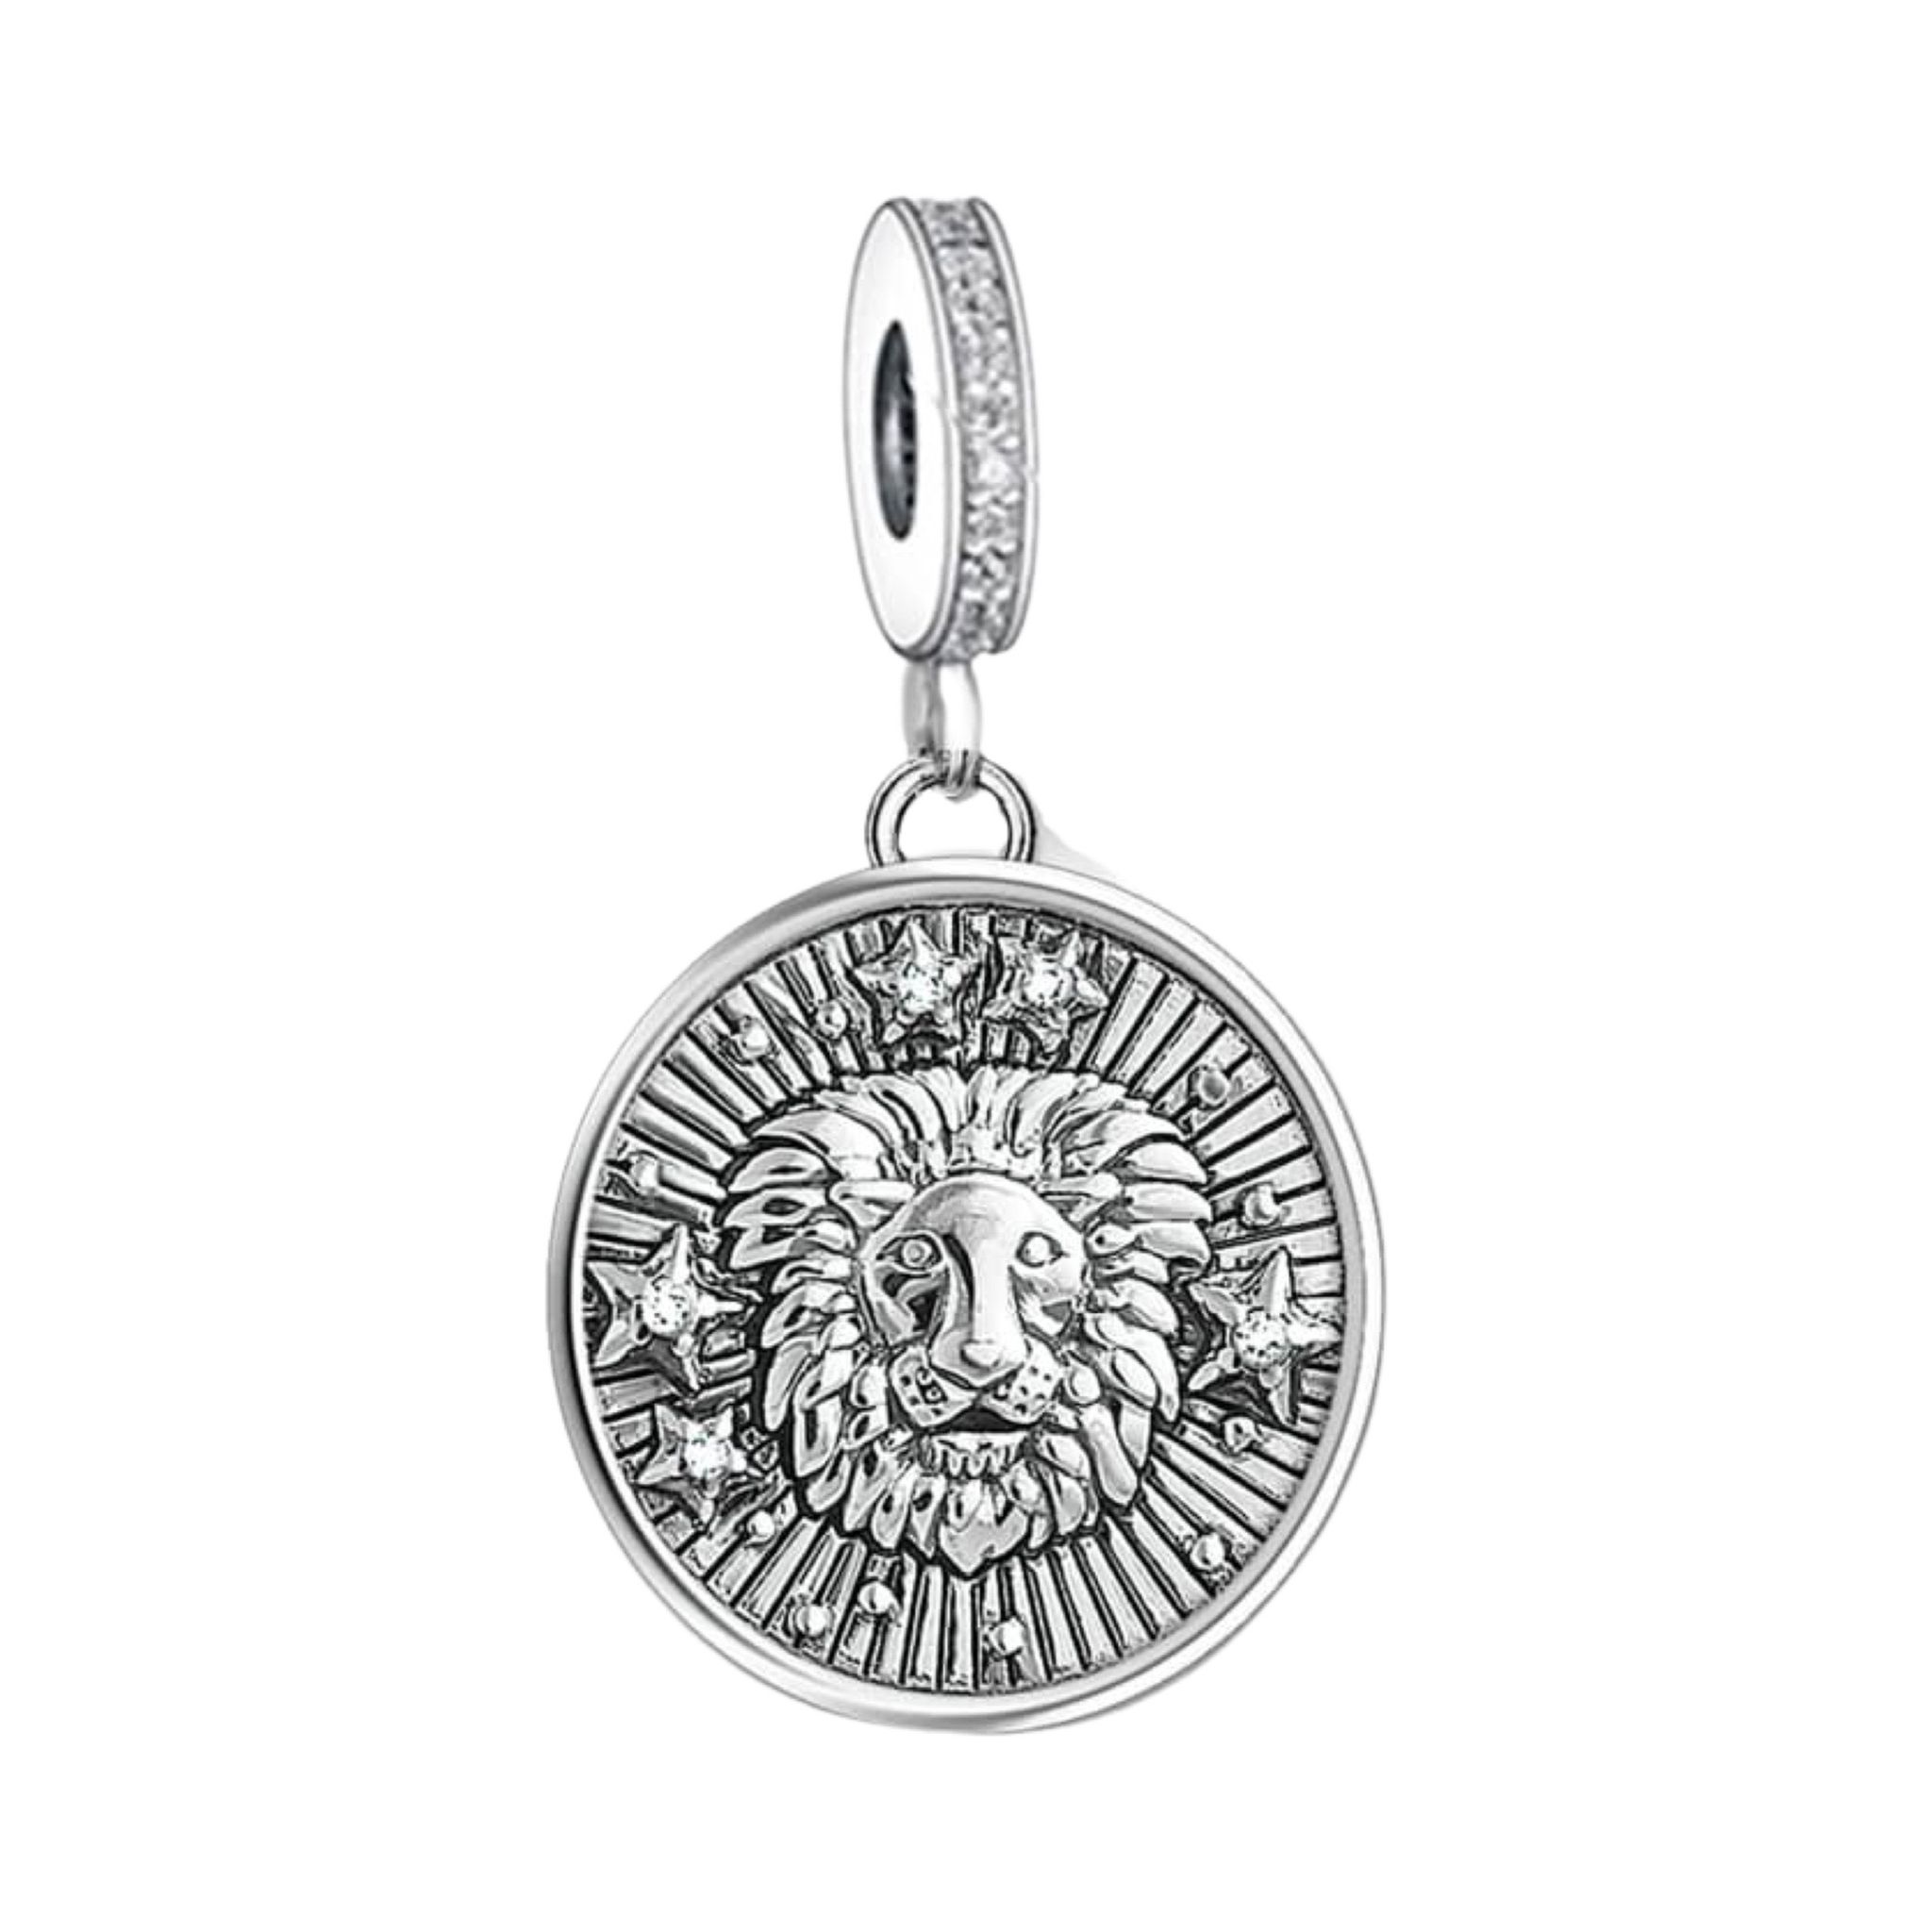 Product Afbeelding Vooraanzicht van onze prachtige Leeuw charm uit de sterrenbeeld collectie. Deze lieve Horoscoop bedel rond is gemaakt van 925 sterling zilver met 3d leeuw bovenop de medaillon.